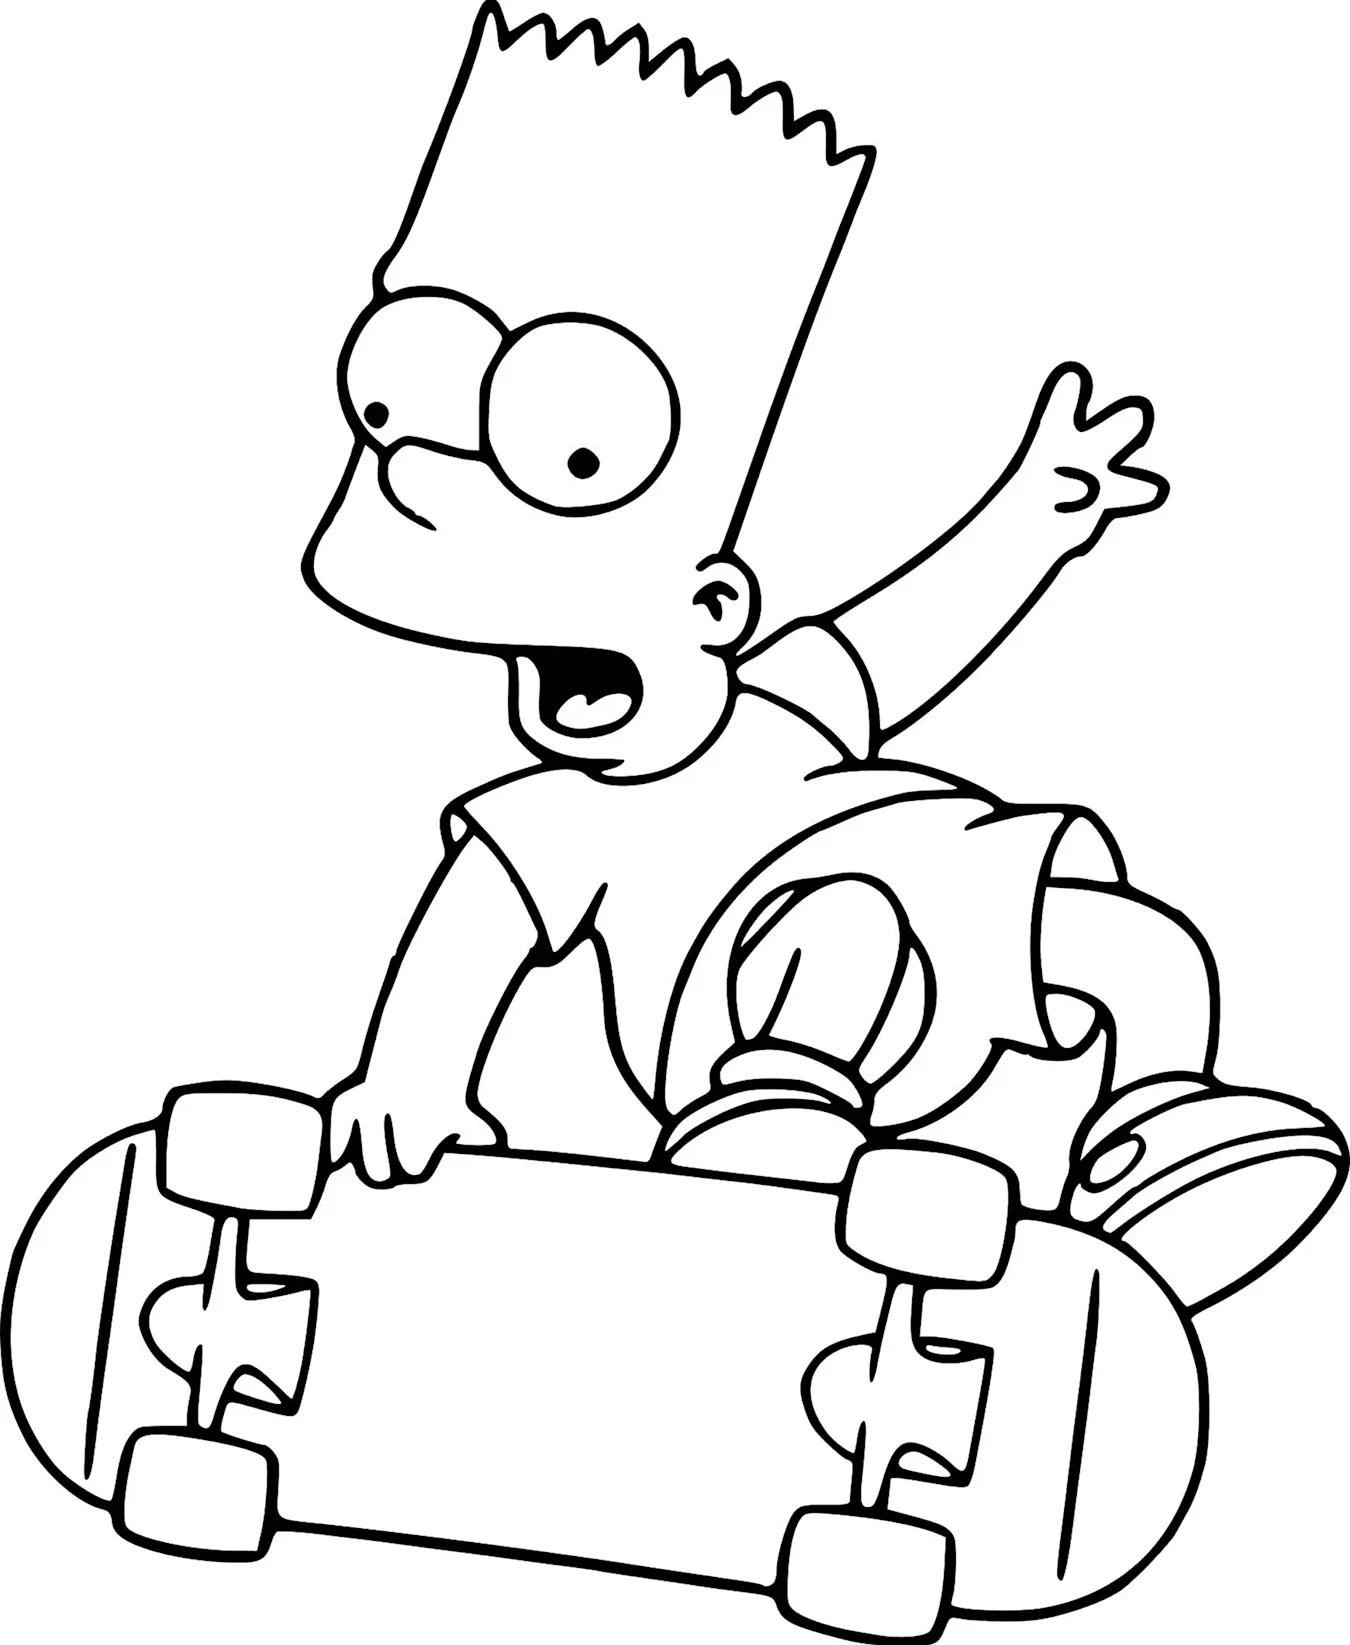 Барт симпсон на скейте. Для срисовки